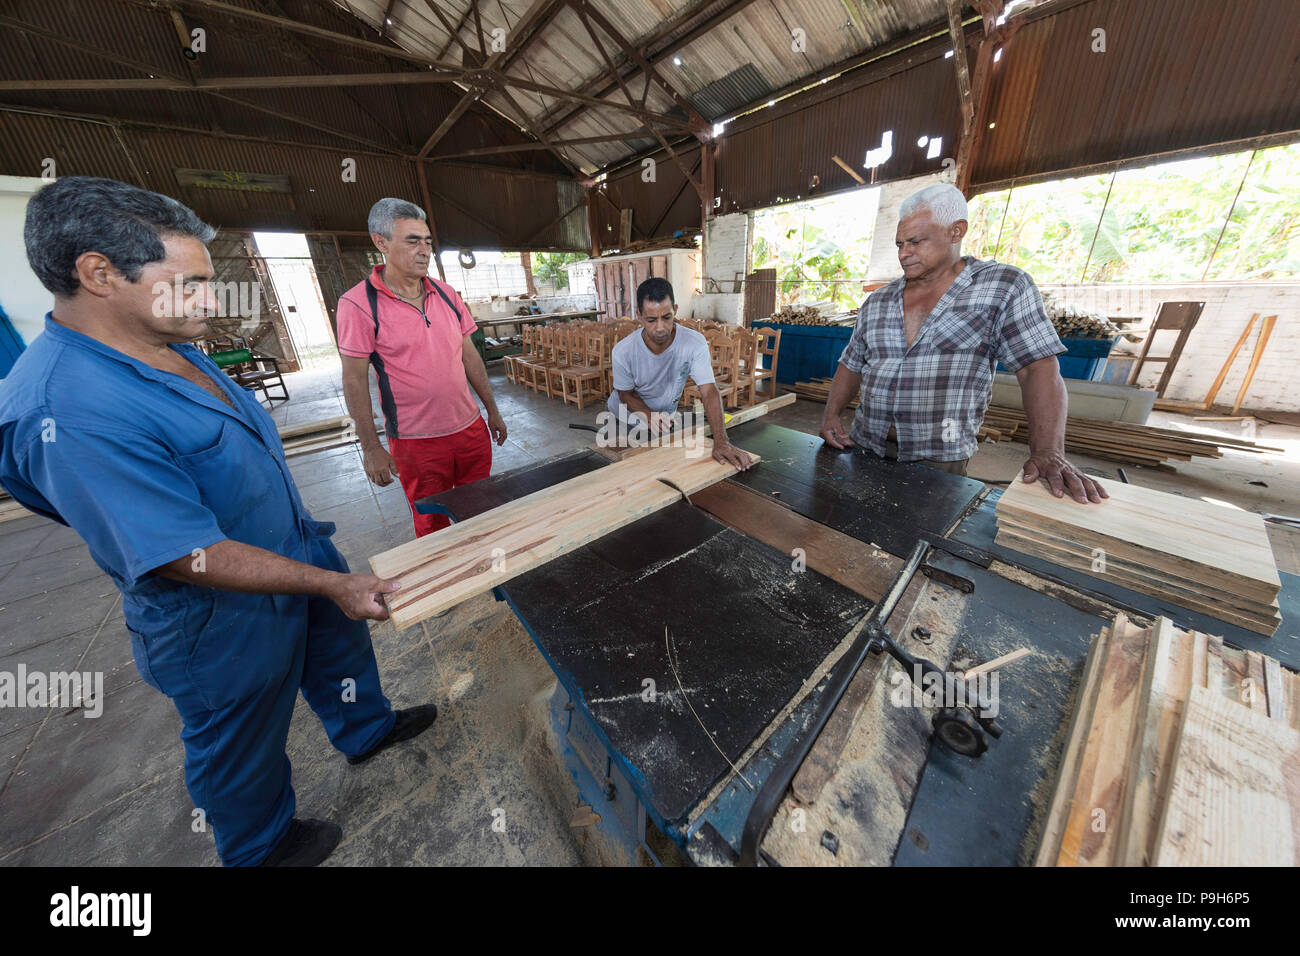 Los muebles están hechos a mano de maderas locales en la comunidad de Pepito Tey, Cuba Foto de stock